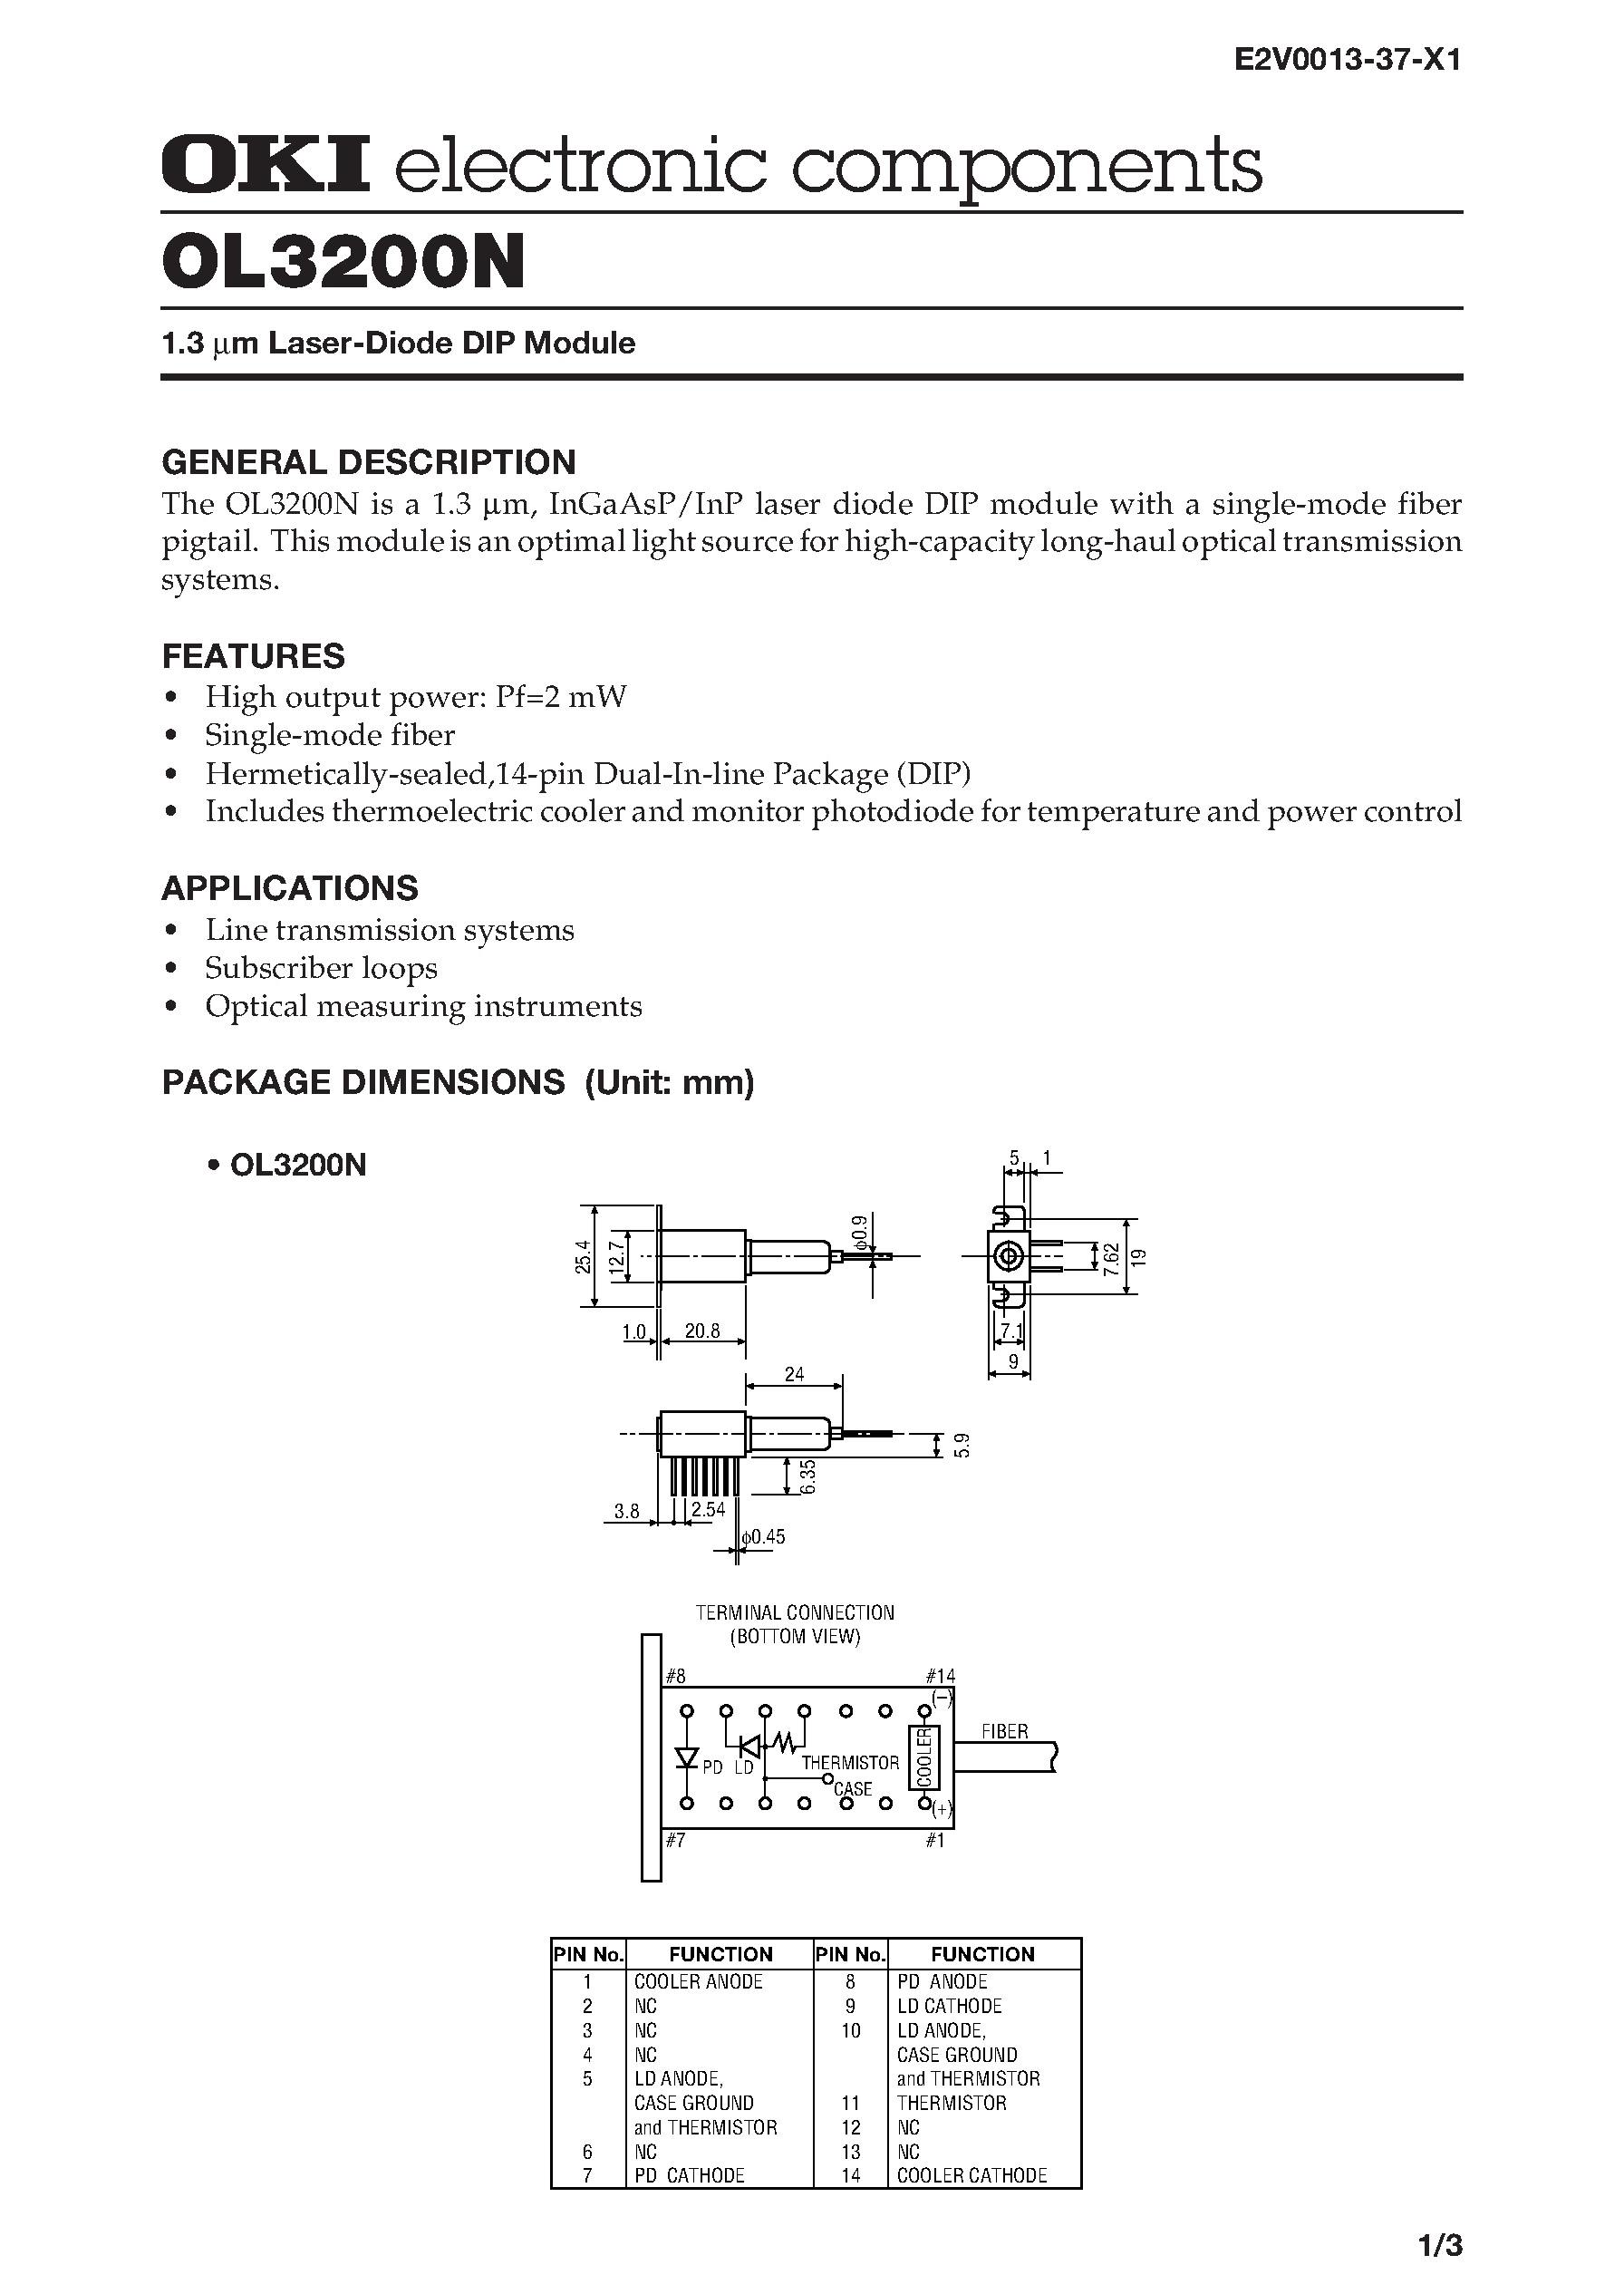 Datasheet OL3200N - 1.3 m Laser-Diode DIP Module page 1